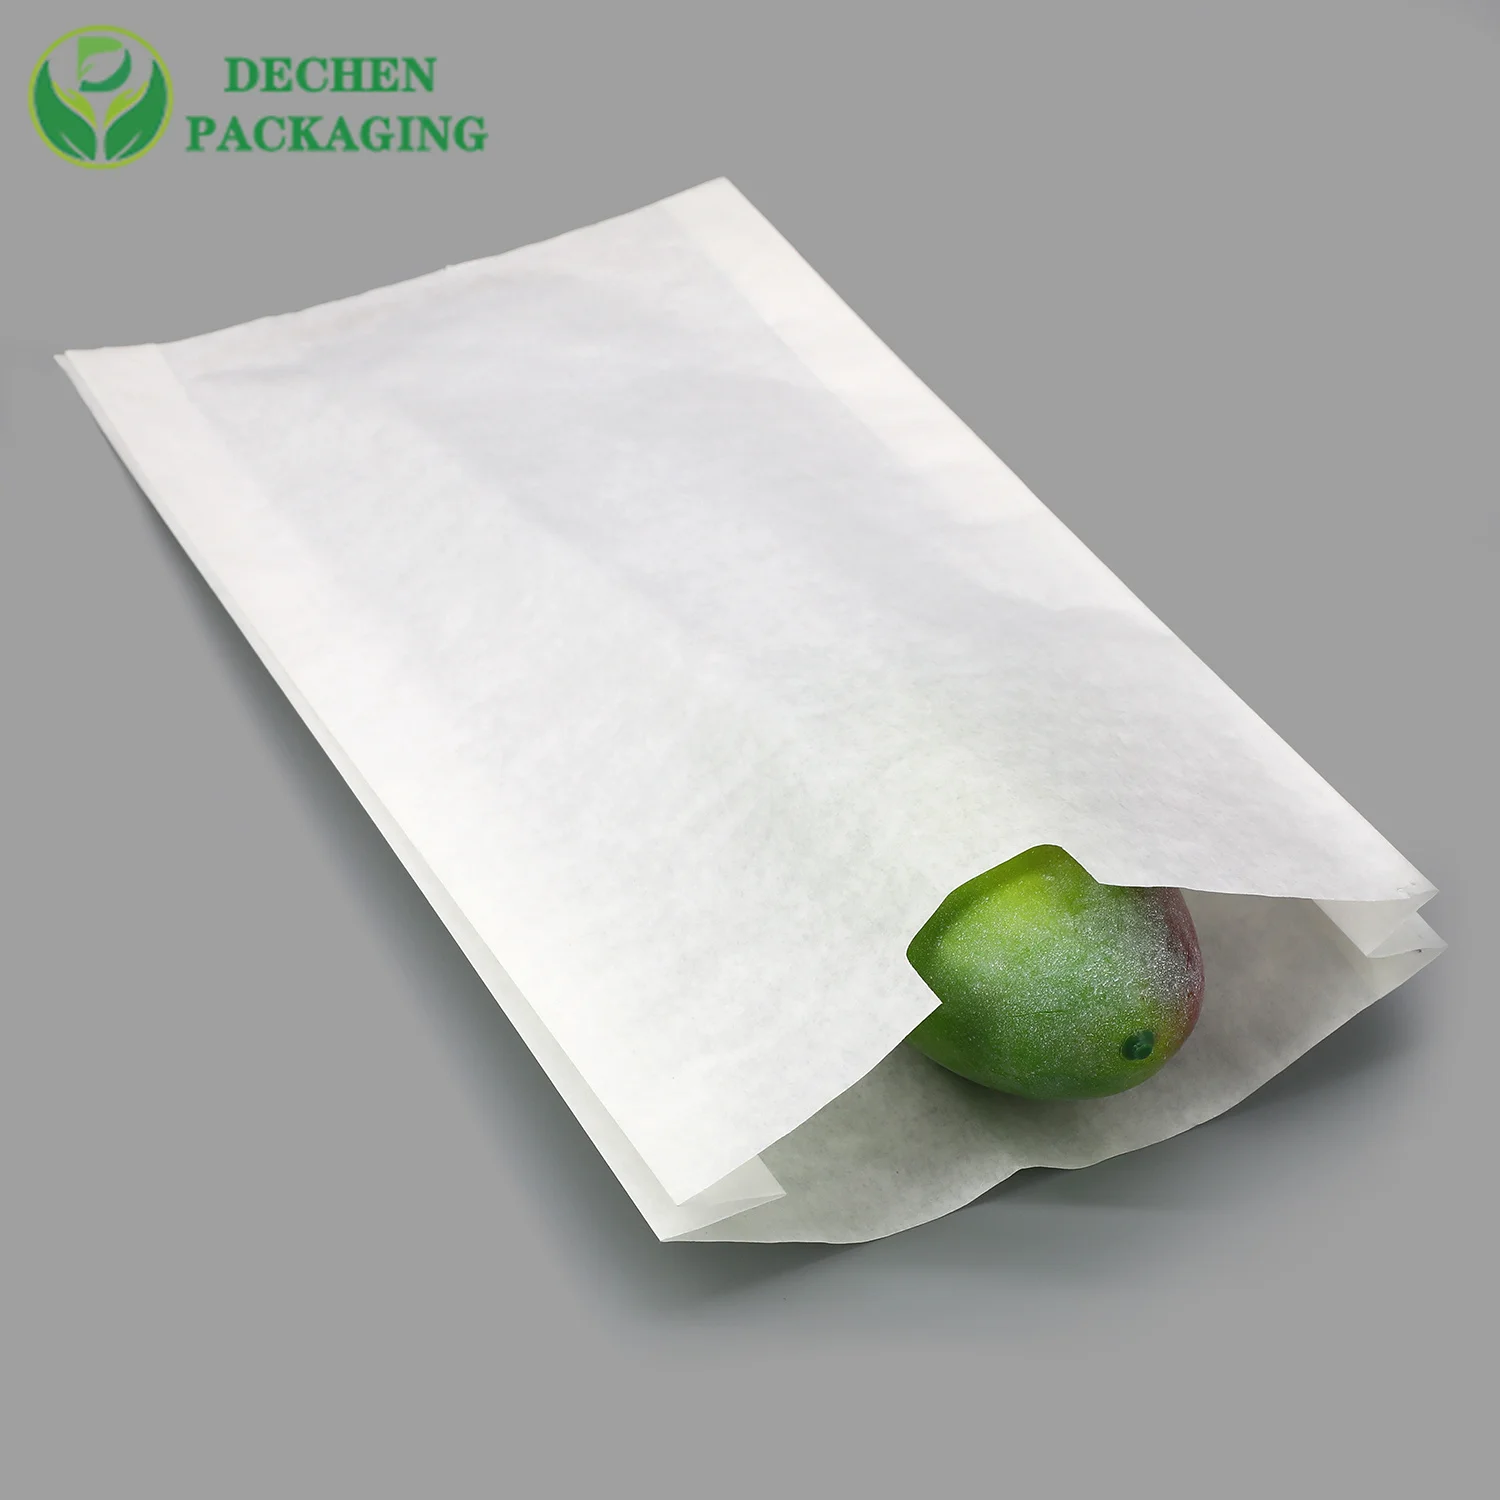 La protection de fruit de sac de mangue de papier du Bangladesh de preuve de l'eau met en sac des pommes anti insecte